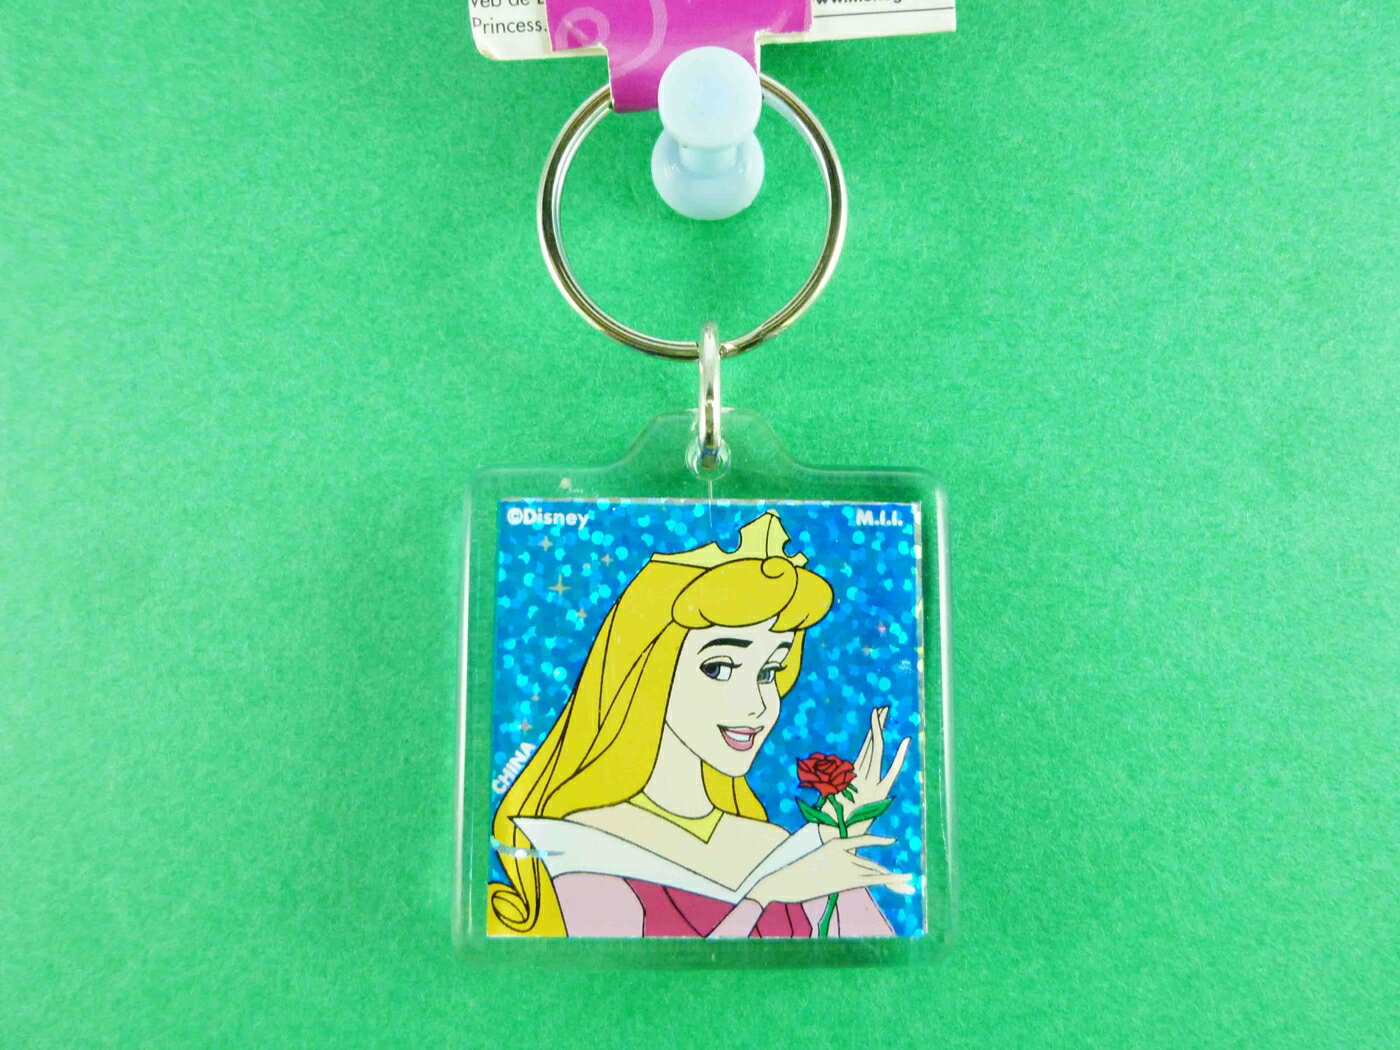 【震撼精品百貨】公主 系列Princess 立體造型鑰匙圈-睡美人圖案 震撼日式精品百貨